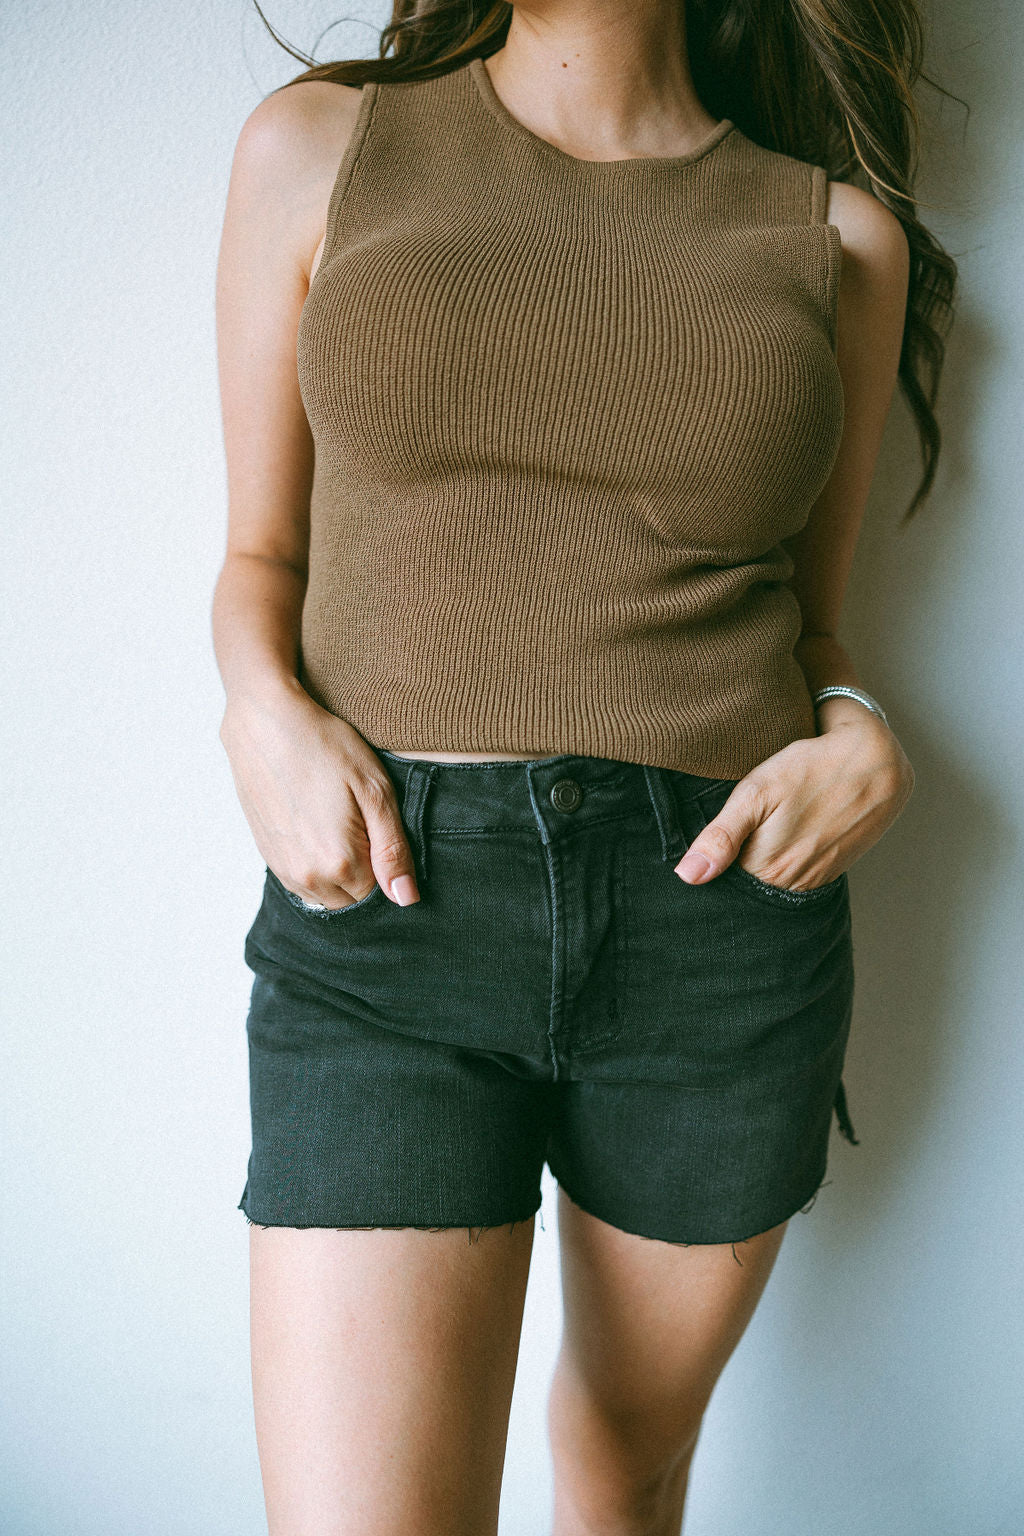 Rebecca Black Denim Shorts